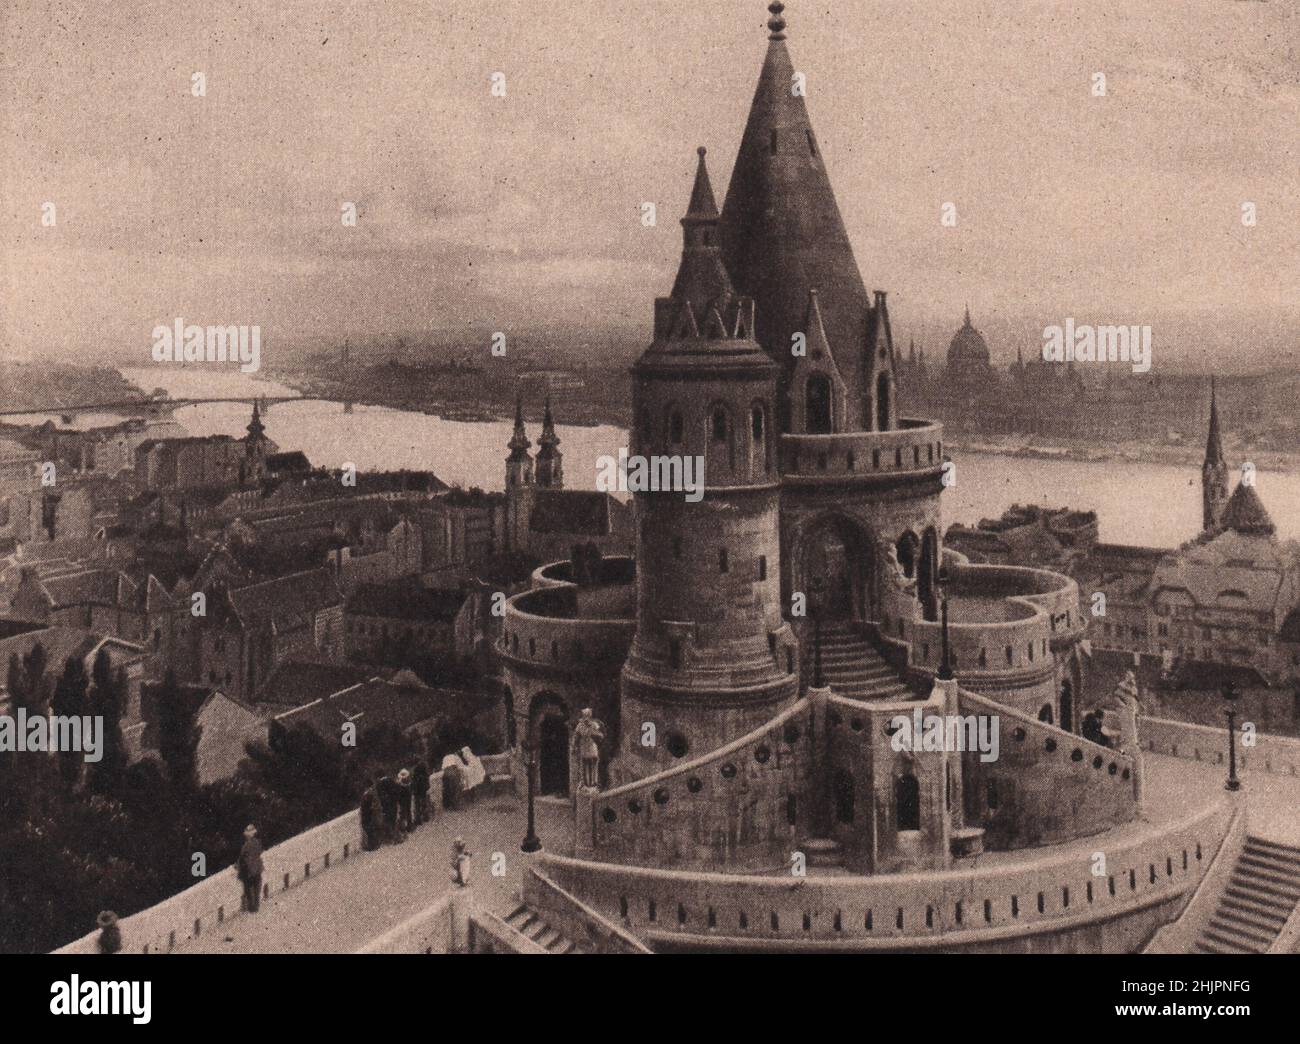 Die Fischerbastei, ein prominenter Teil von Buda, bietet eine herrliche Aussicht. Sein mittelalterlicher Charakter ist sorgfältig erhalten. Ungarn. Budapest (1923) Stockfoto